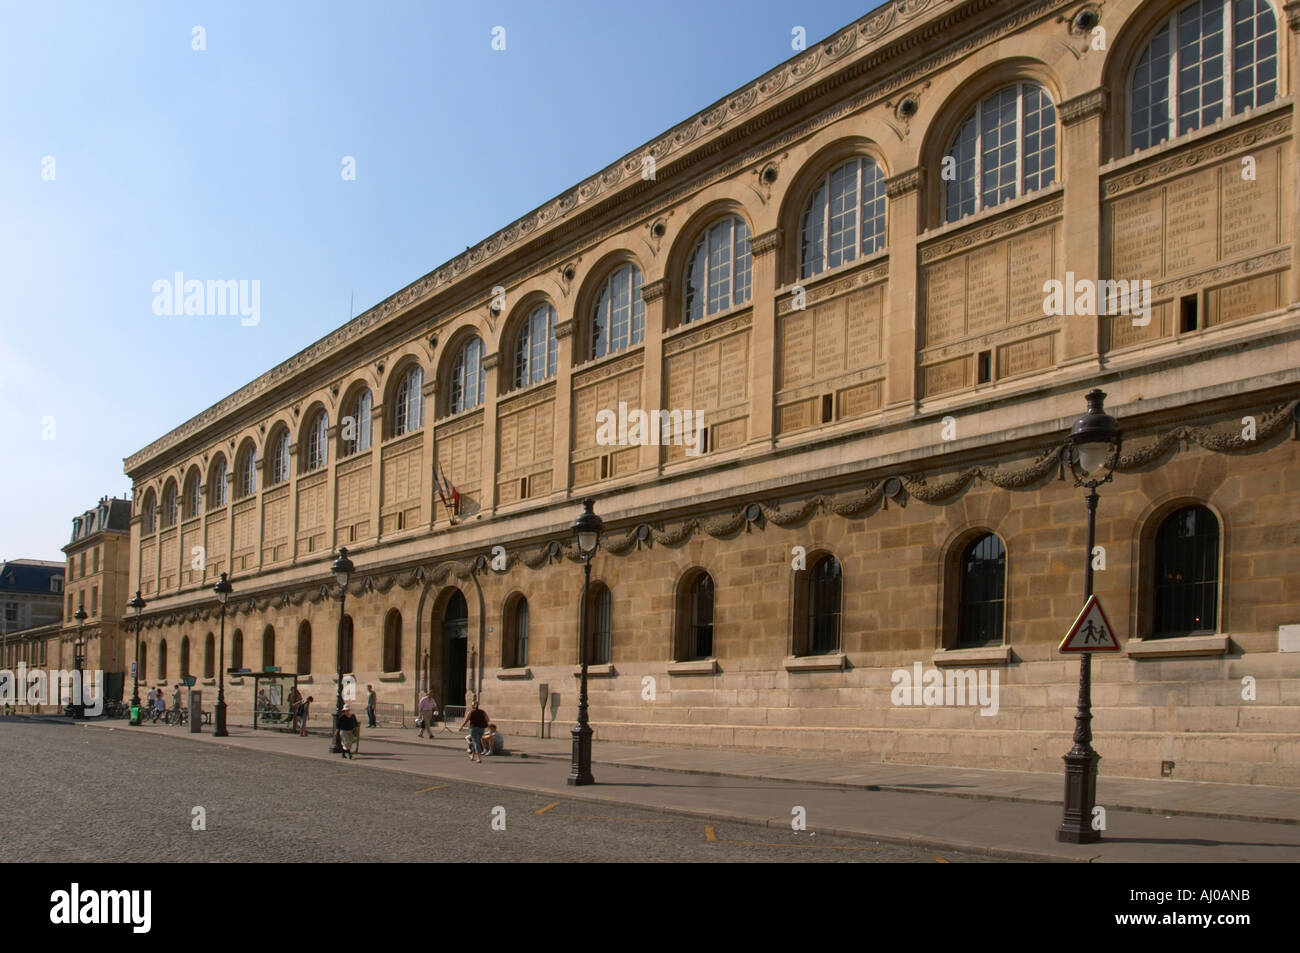 Bibliothèque sainte geneviève, paris hi-res stock photography and images -  Alamy